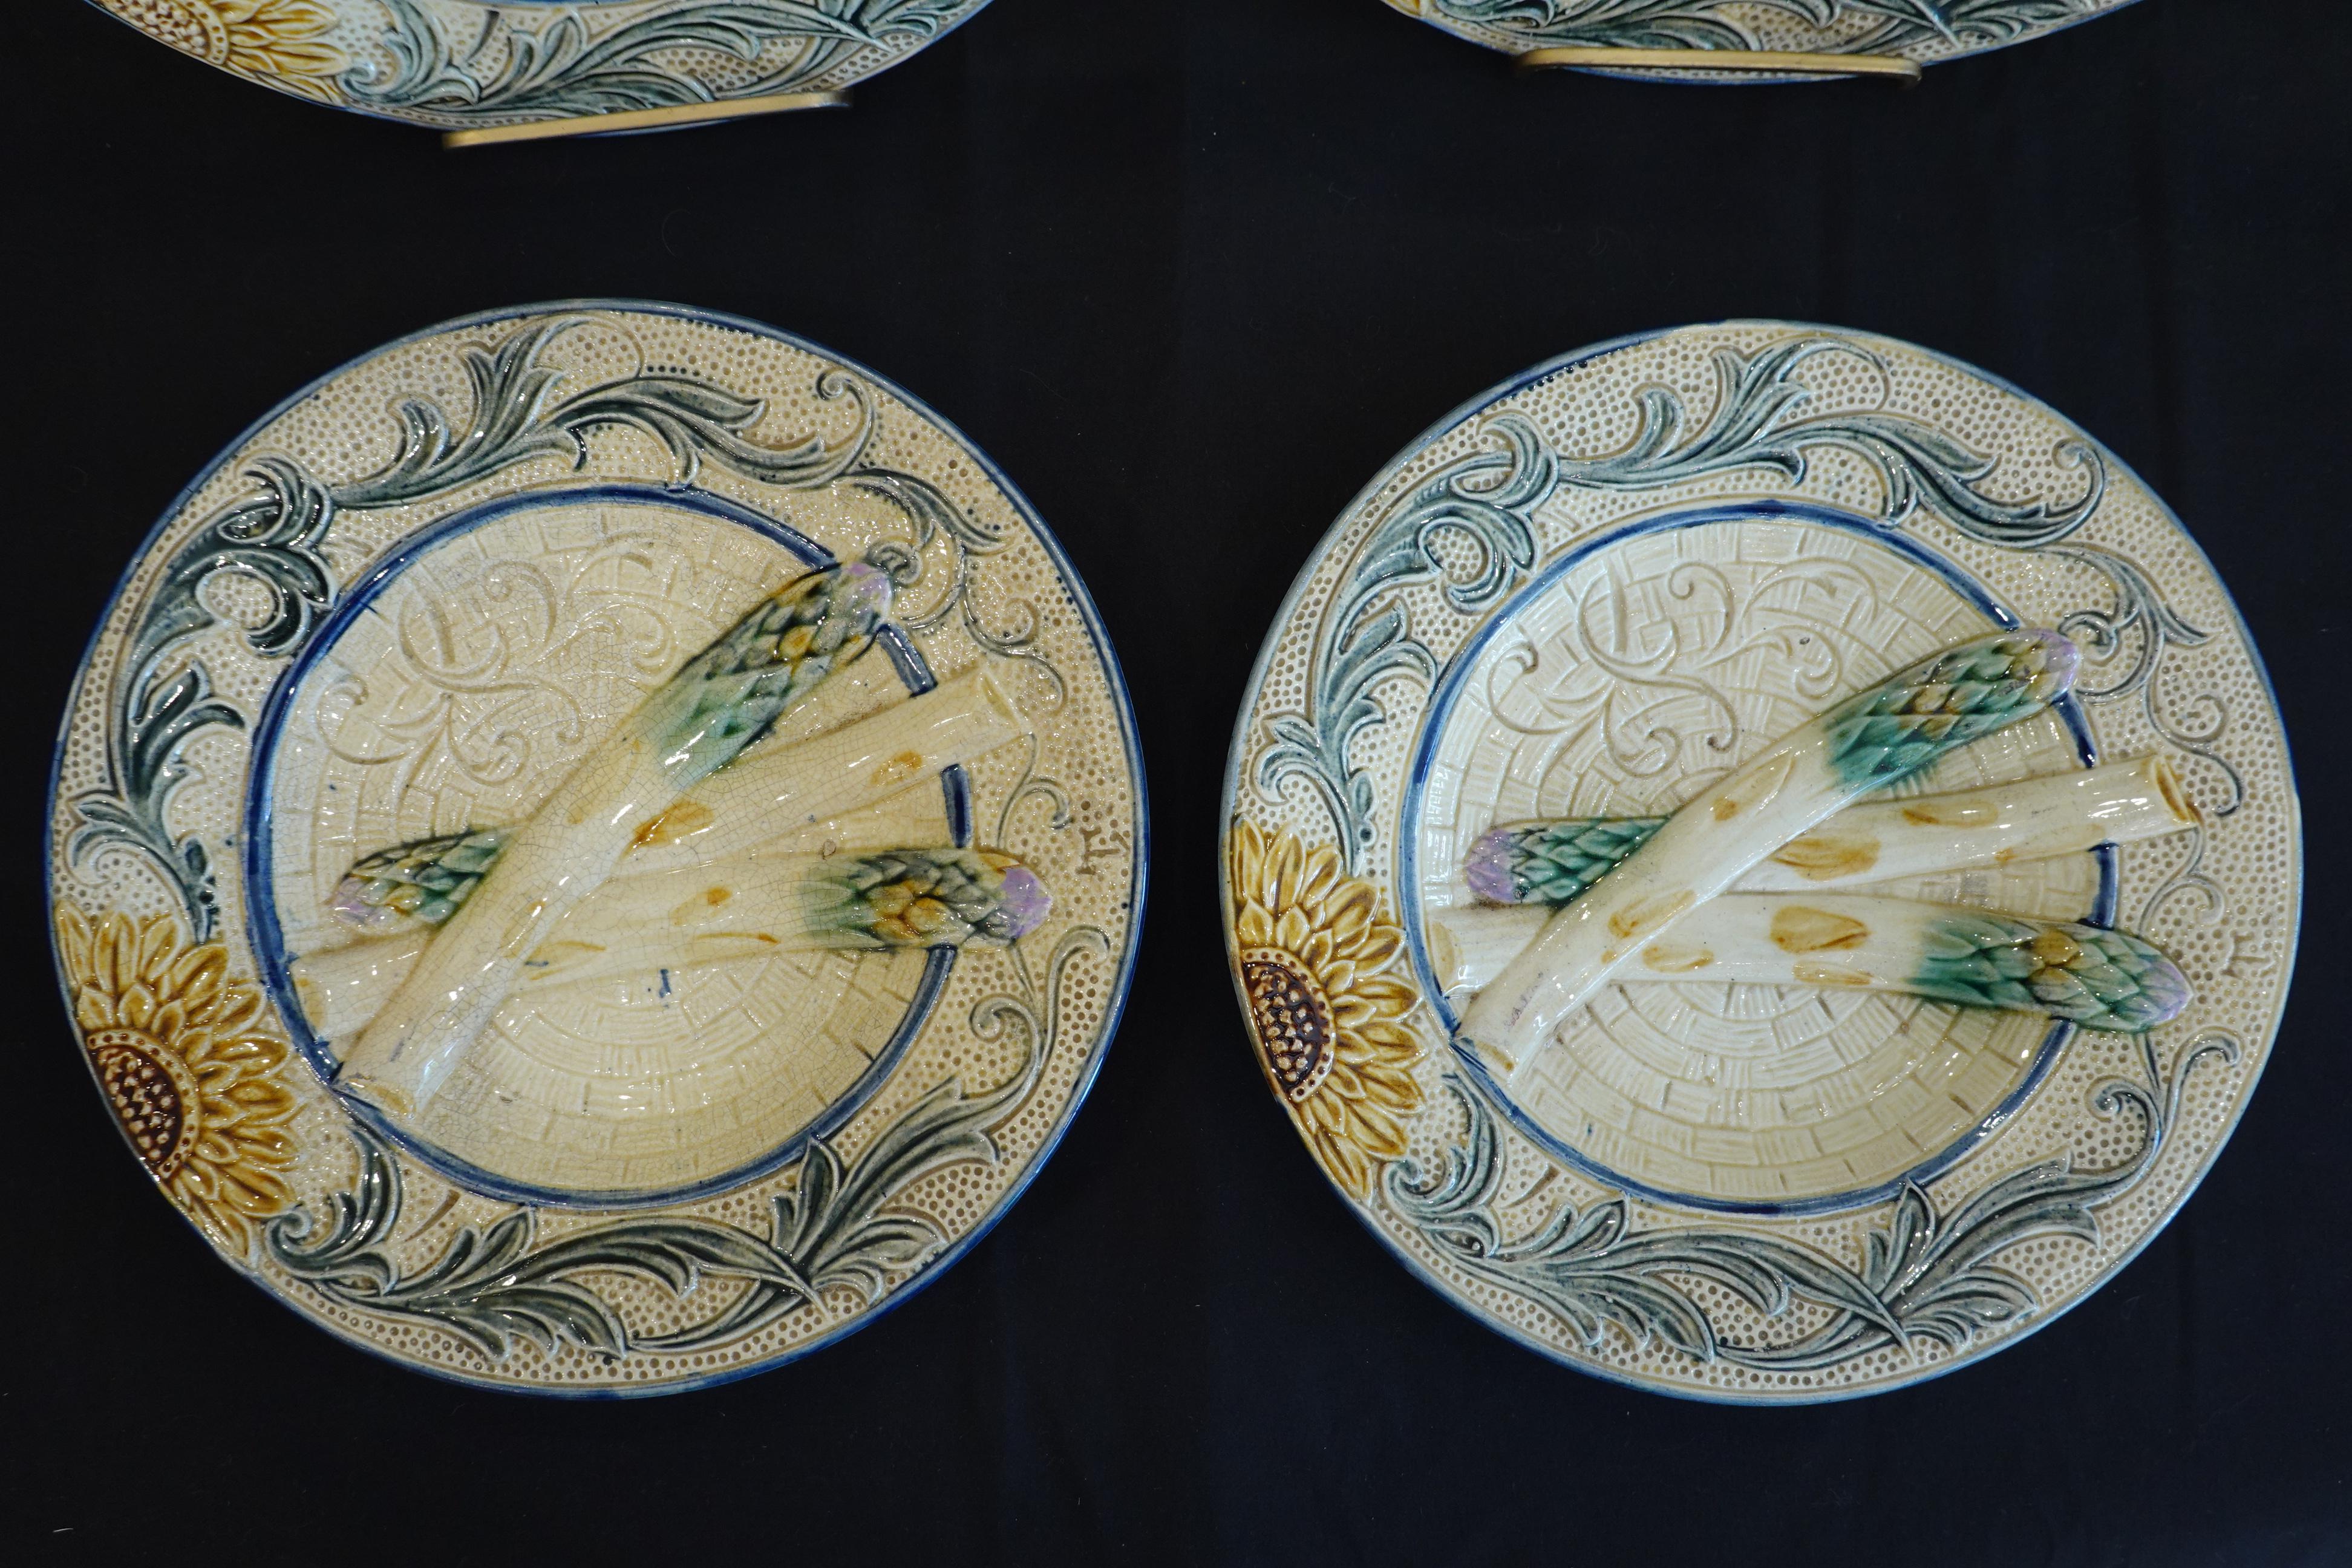 Satz von vier Majolika-Spargeltellern aus dem 19. Jahrhundert. Auf jedem Teller befinden sich drei geformte Spargelstangen mit einer Sonnenblume und Ranken, die den Rand umschließen. Die Teller sind nicht beschriftet, aber einige haben einen